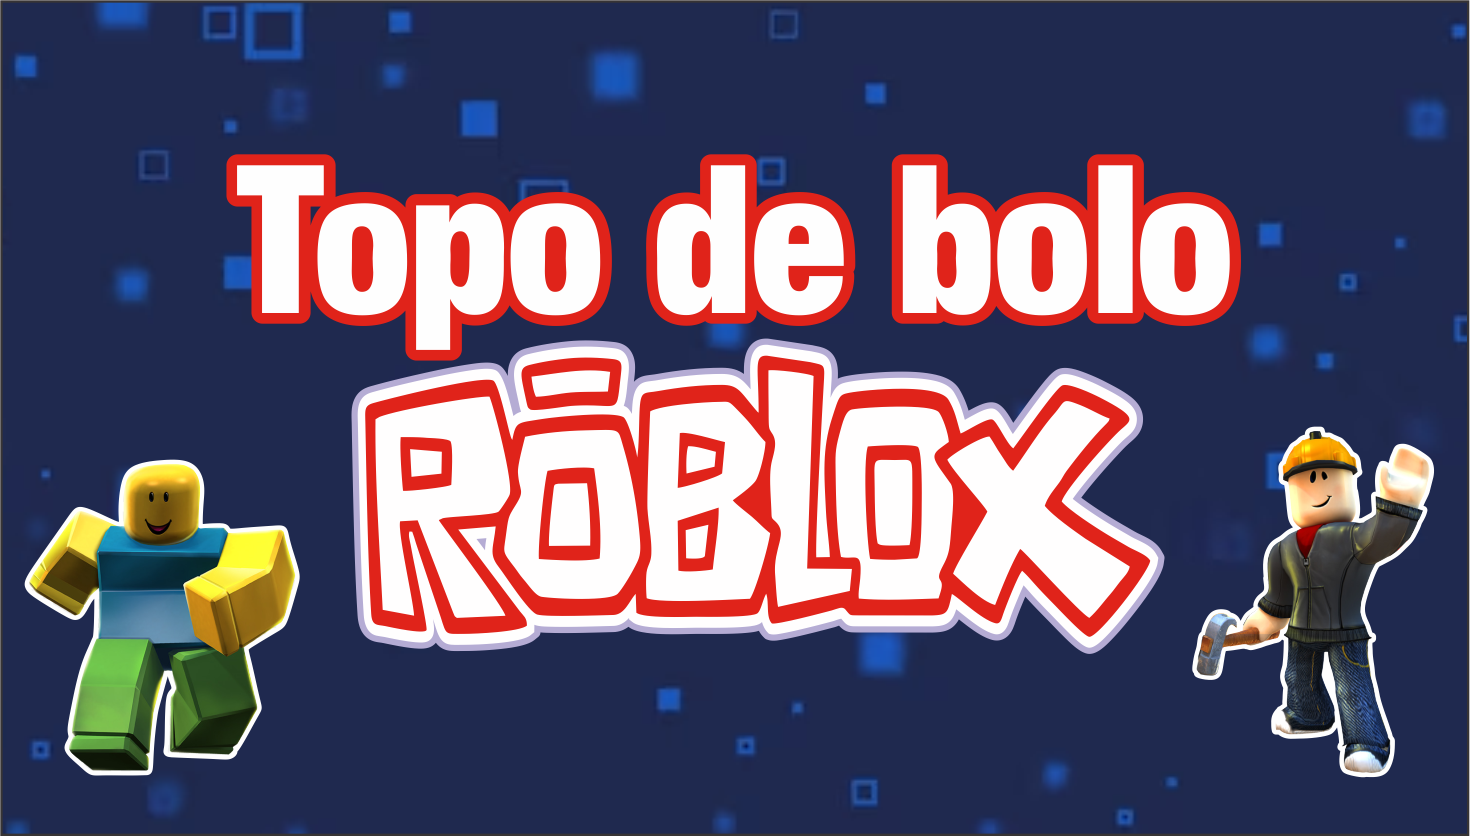 Arquivo de Topo de Bolo Roblox